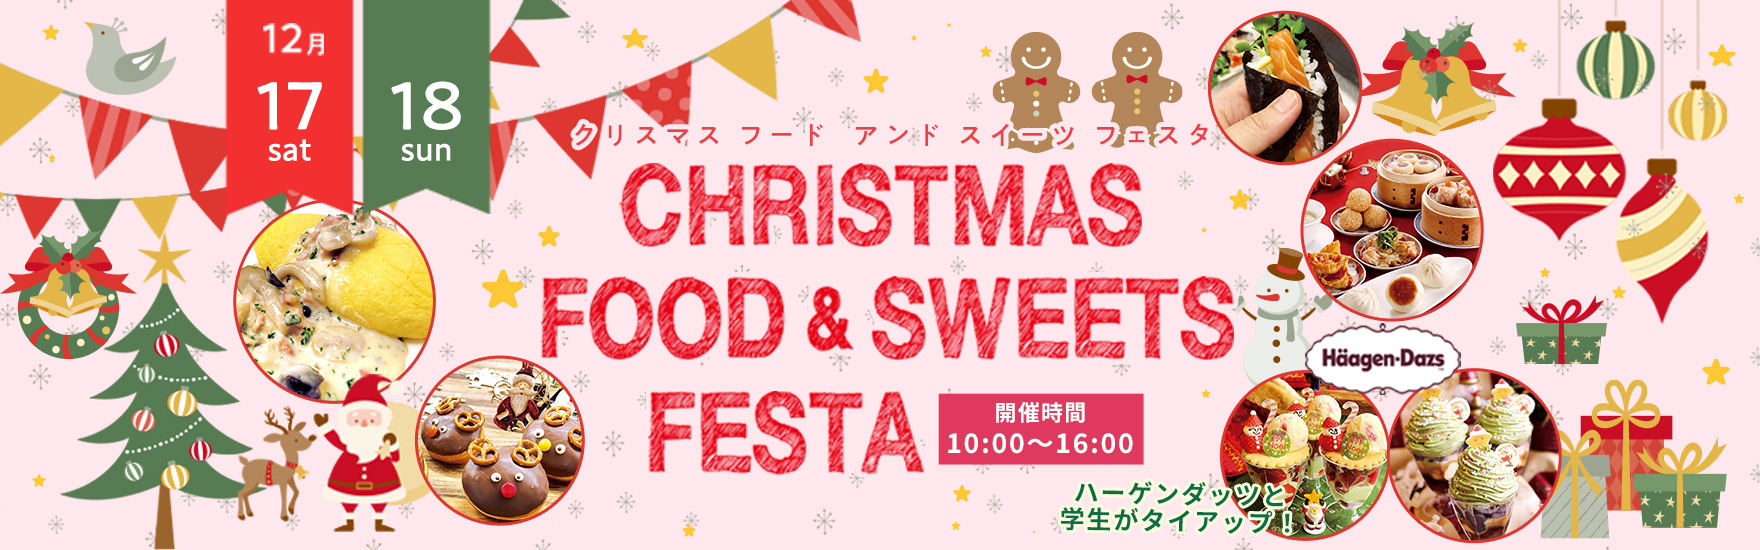 12月FOOD&SWEETS FESTA